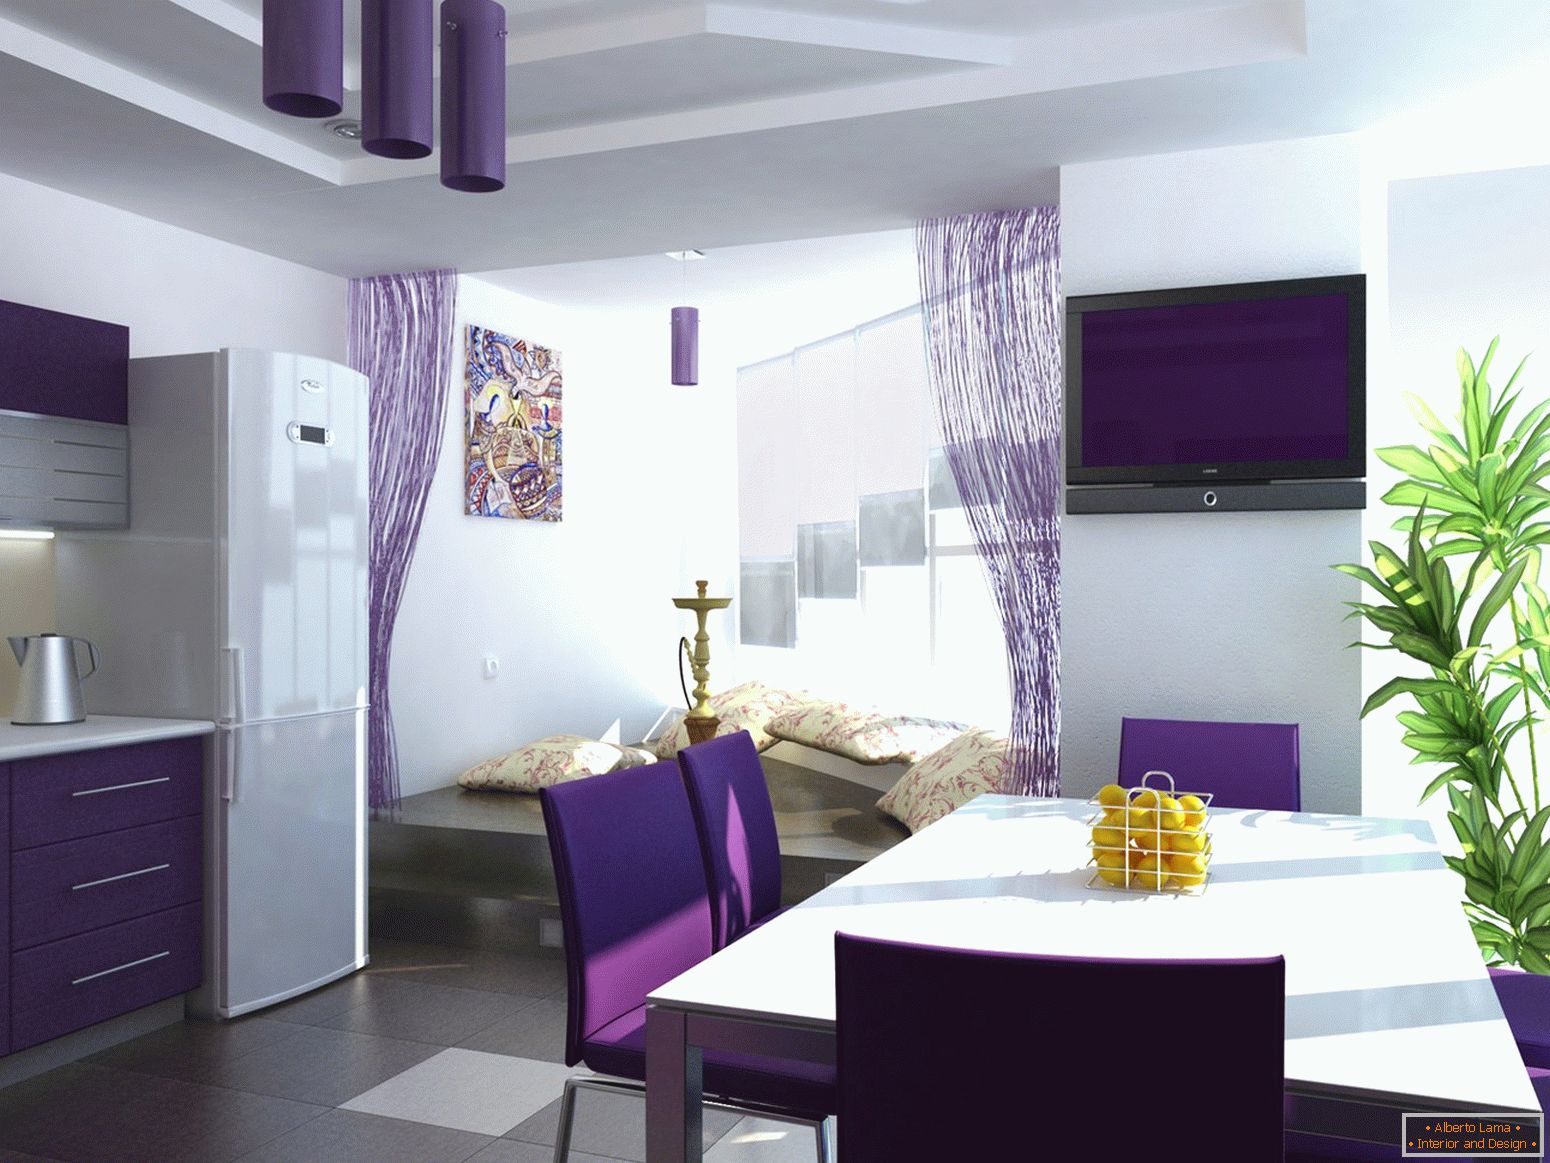 Cortinas violetas en la cocina